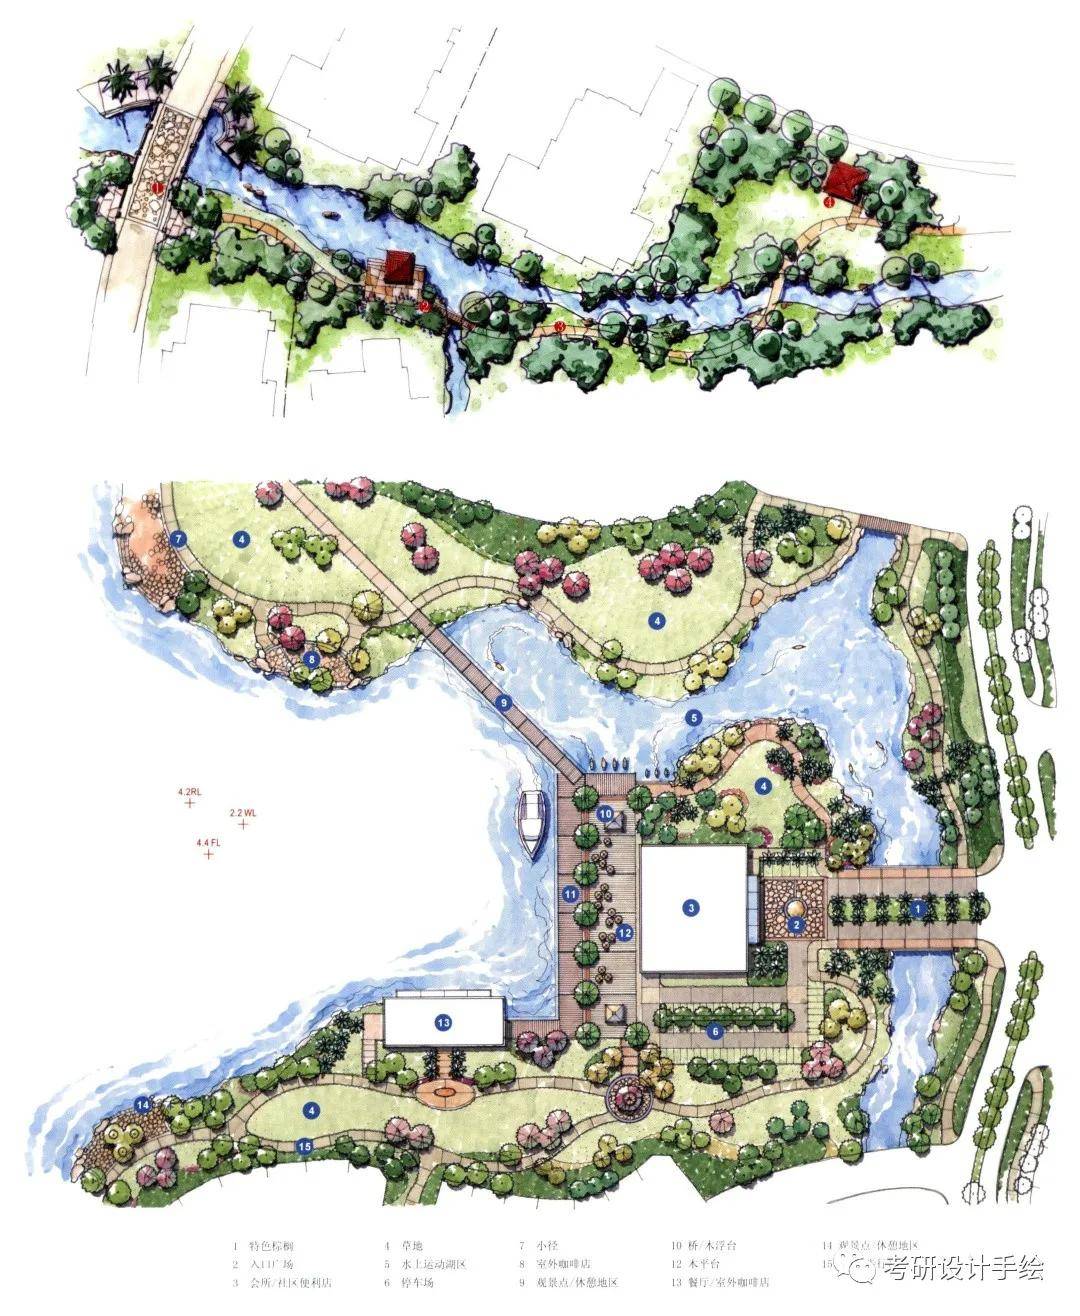 居住区景观设计平面图例1最后马克笔徒手手绘完成上色.